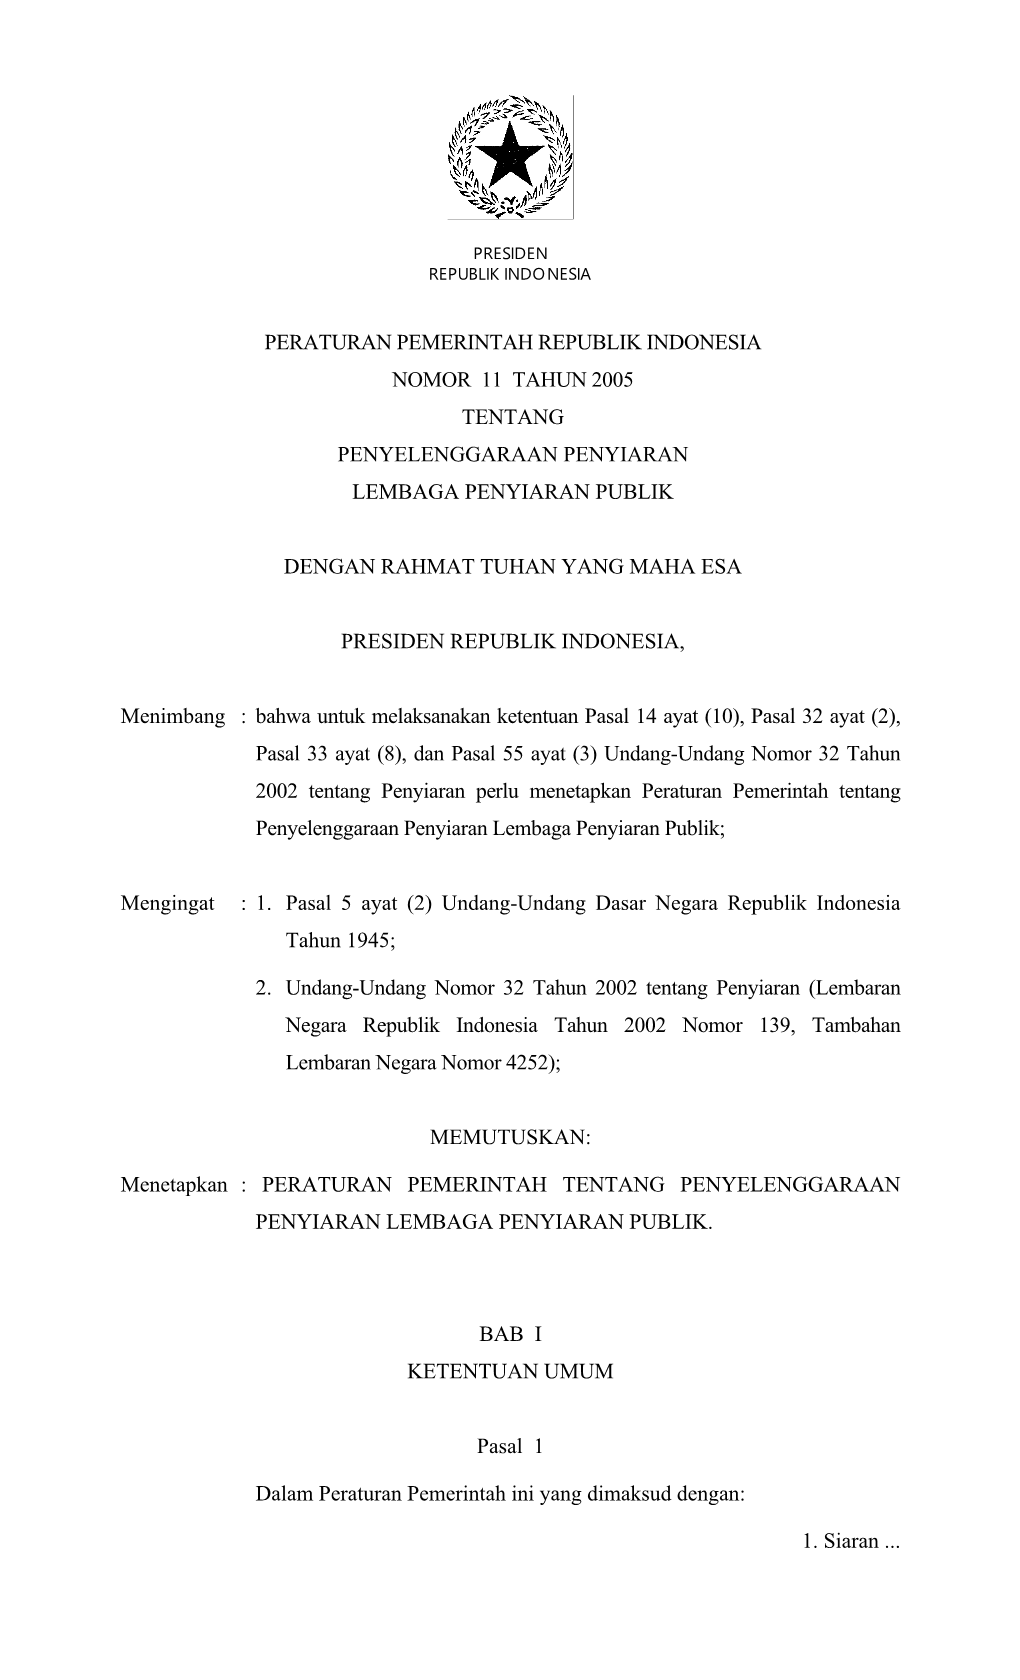 Peraturan Pemerintah Republik Indonesia Nomor 11 Tahun 2005 Tentang Penyelenggaraan Penyiaran Lembaga Penyiaran Publik